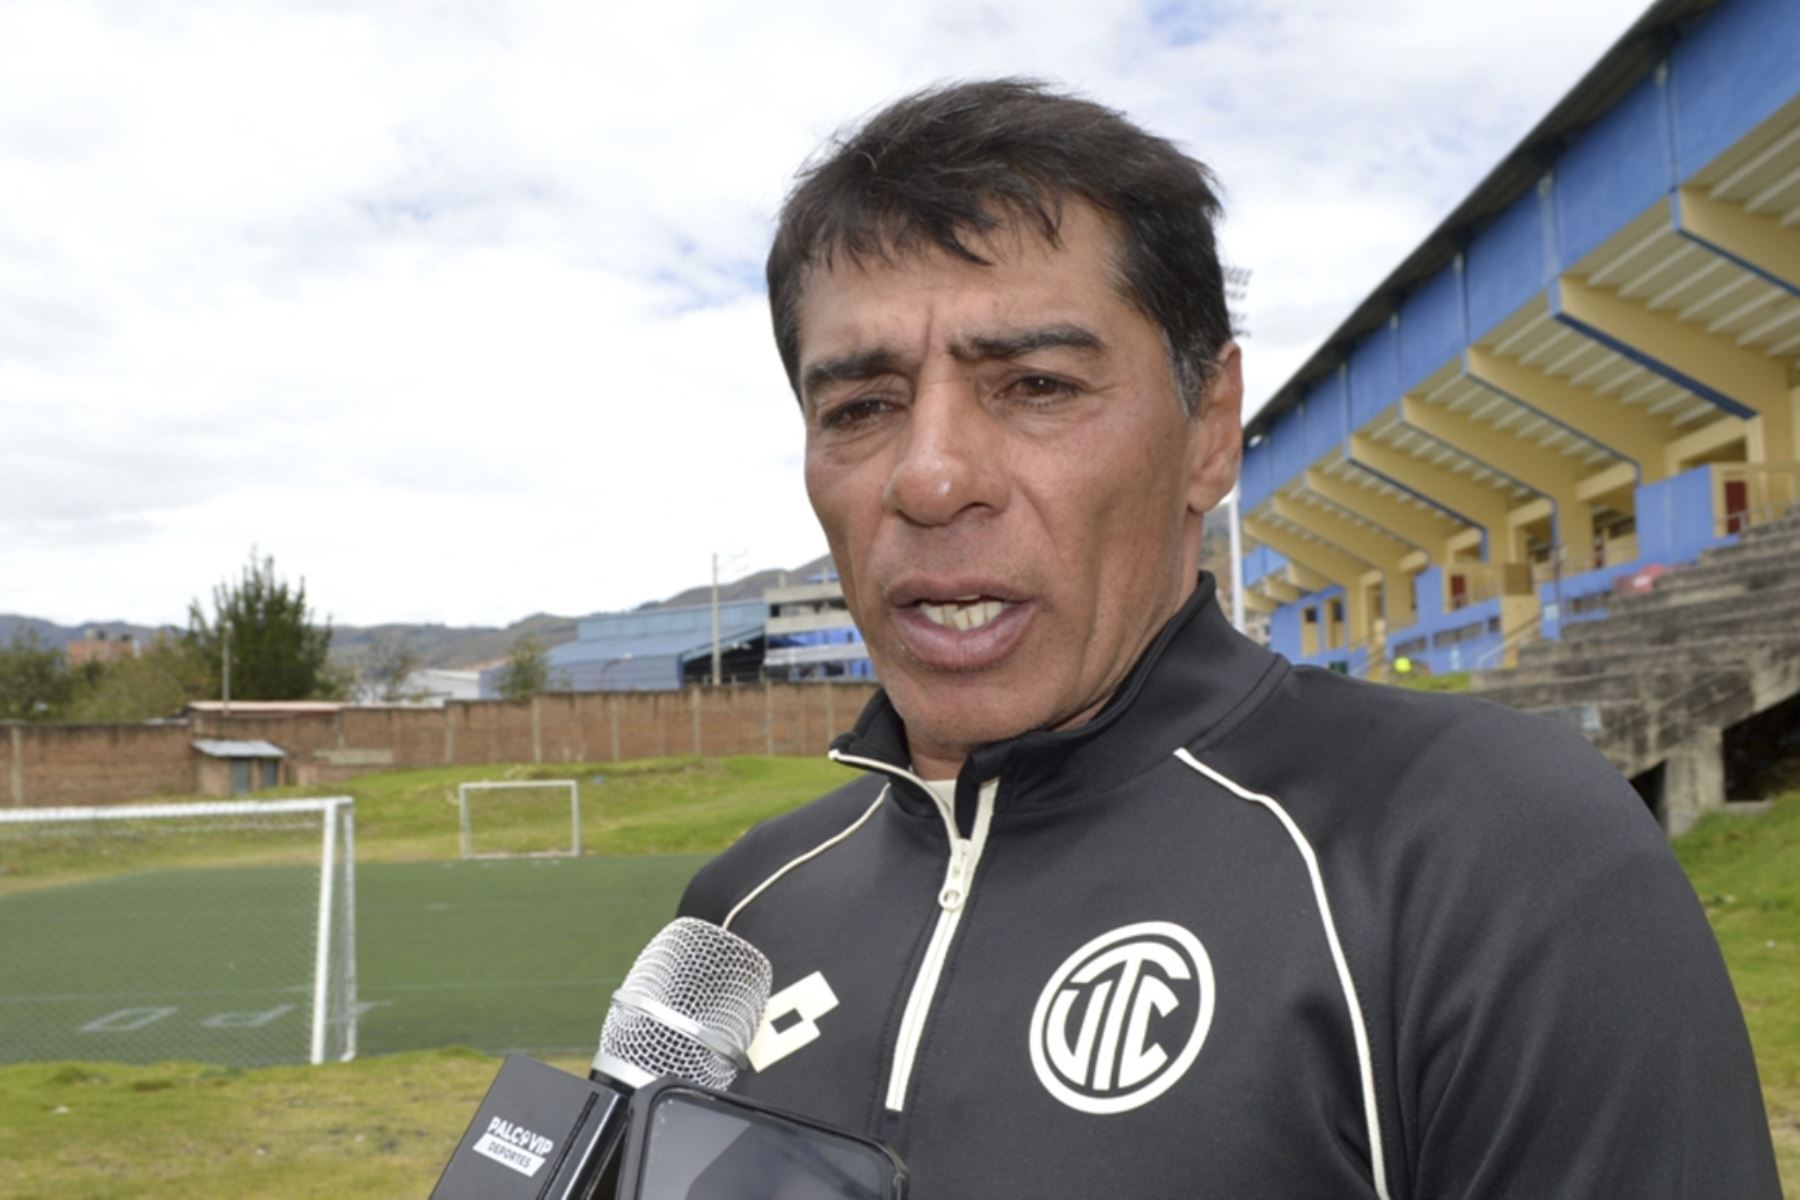 El entrenador Francisco Pizarro arribó a Cajamarca y dirigió su primer entrenamiento con UTC. Foto: ANDINA/Cortesía Eduard Lozano